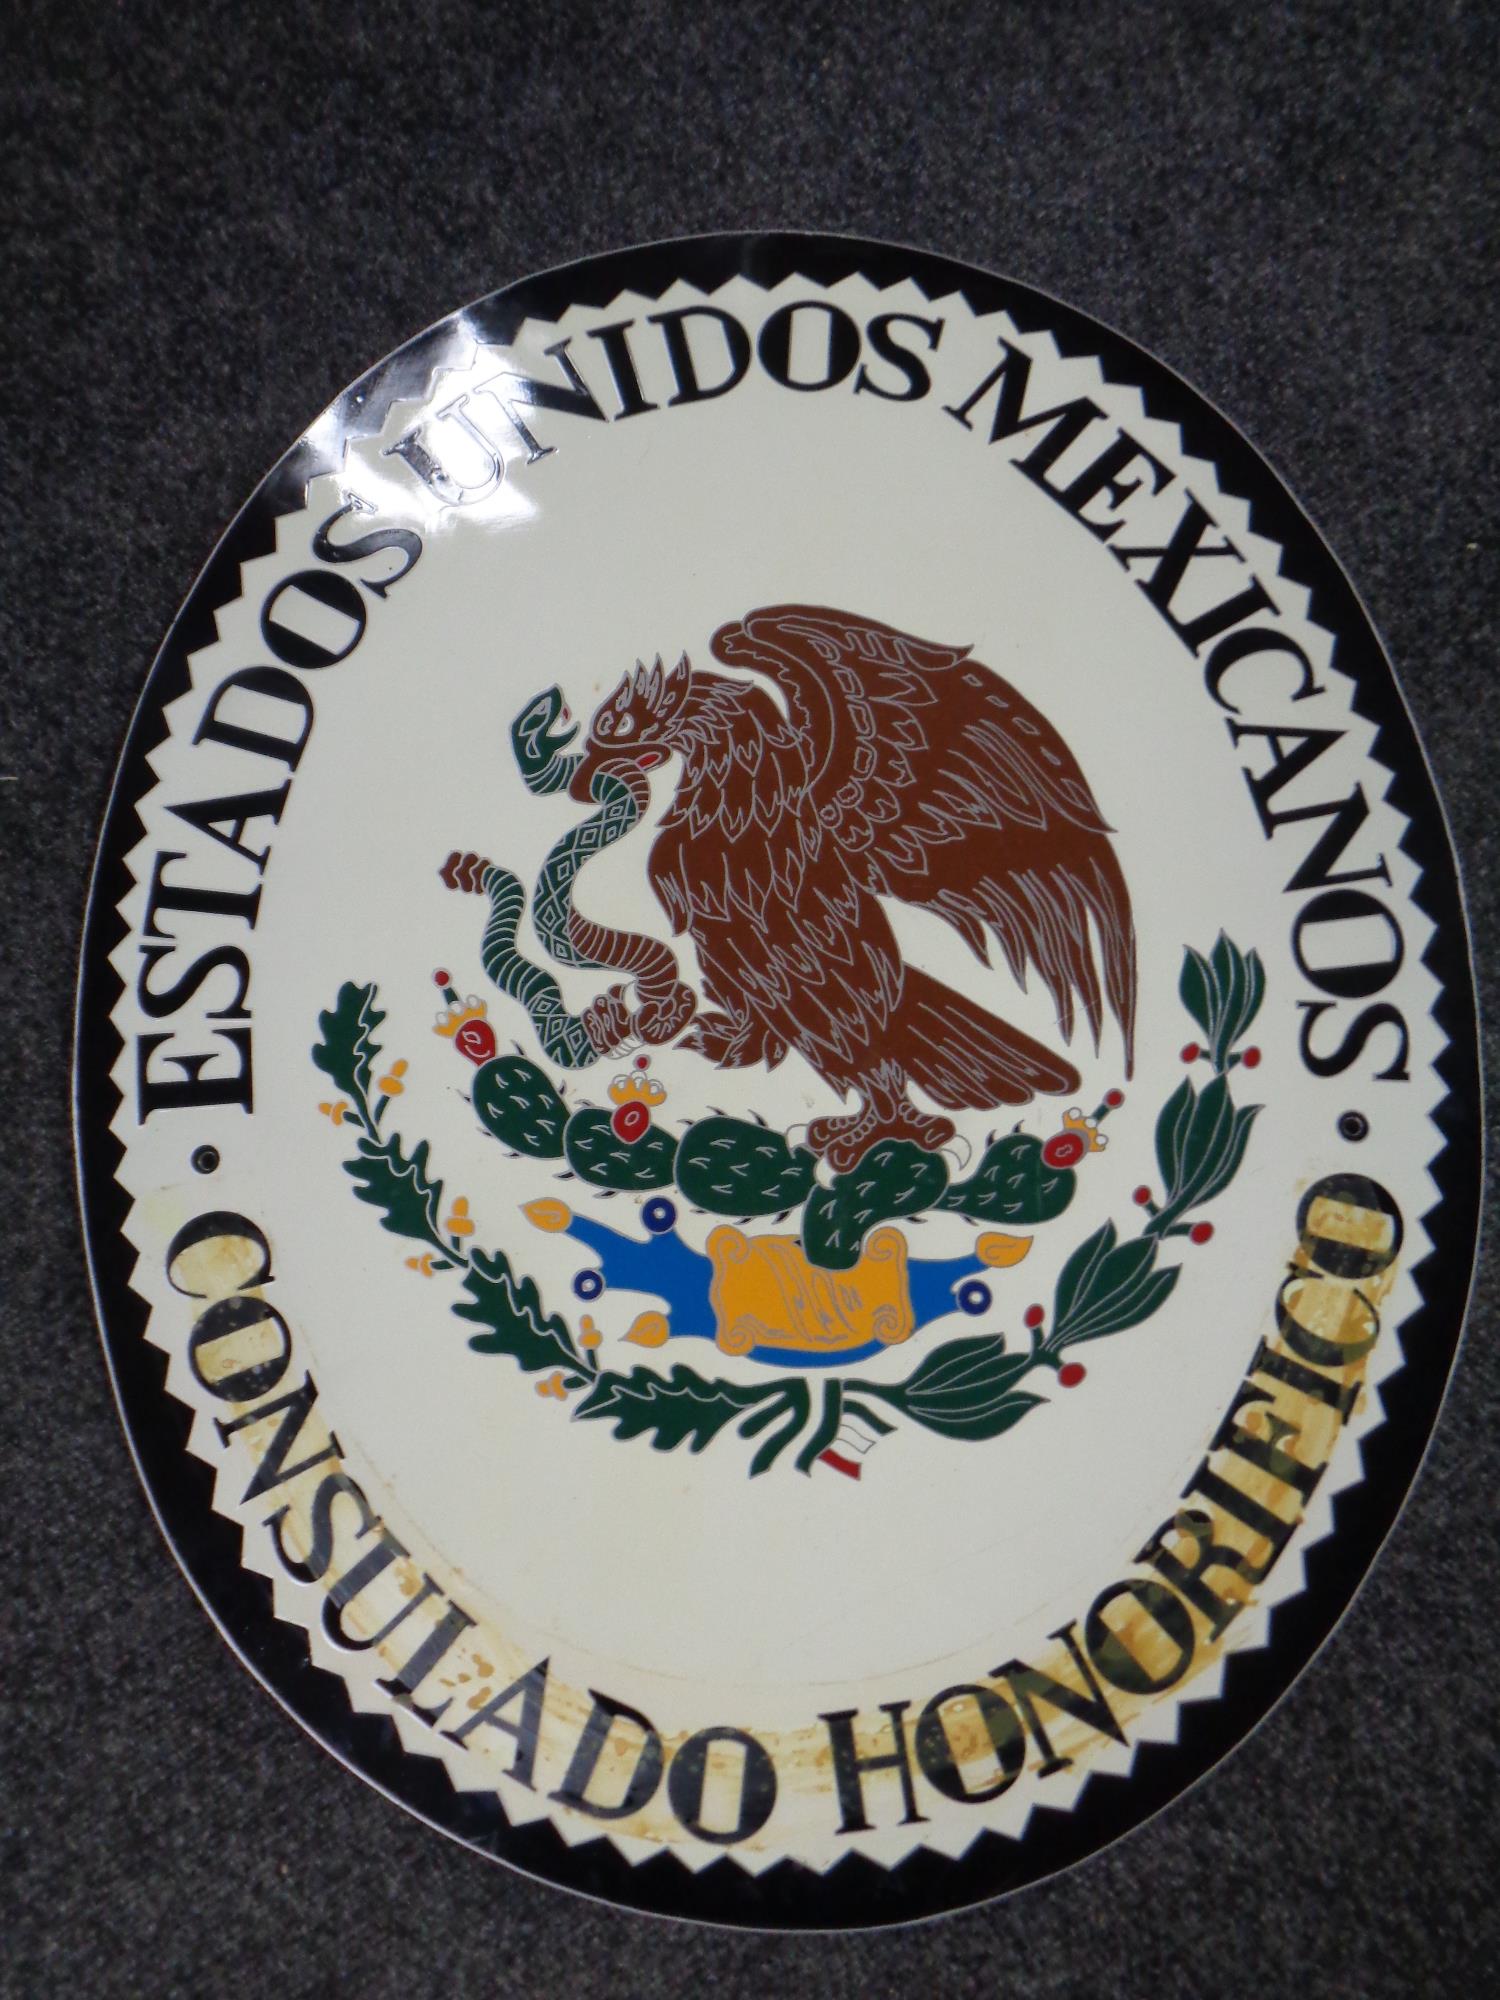 An aluminium wall plaque - Estados Unidos Mexcianos